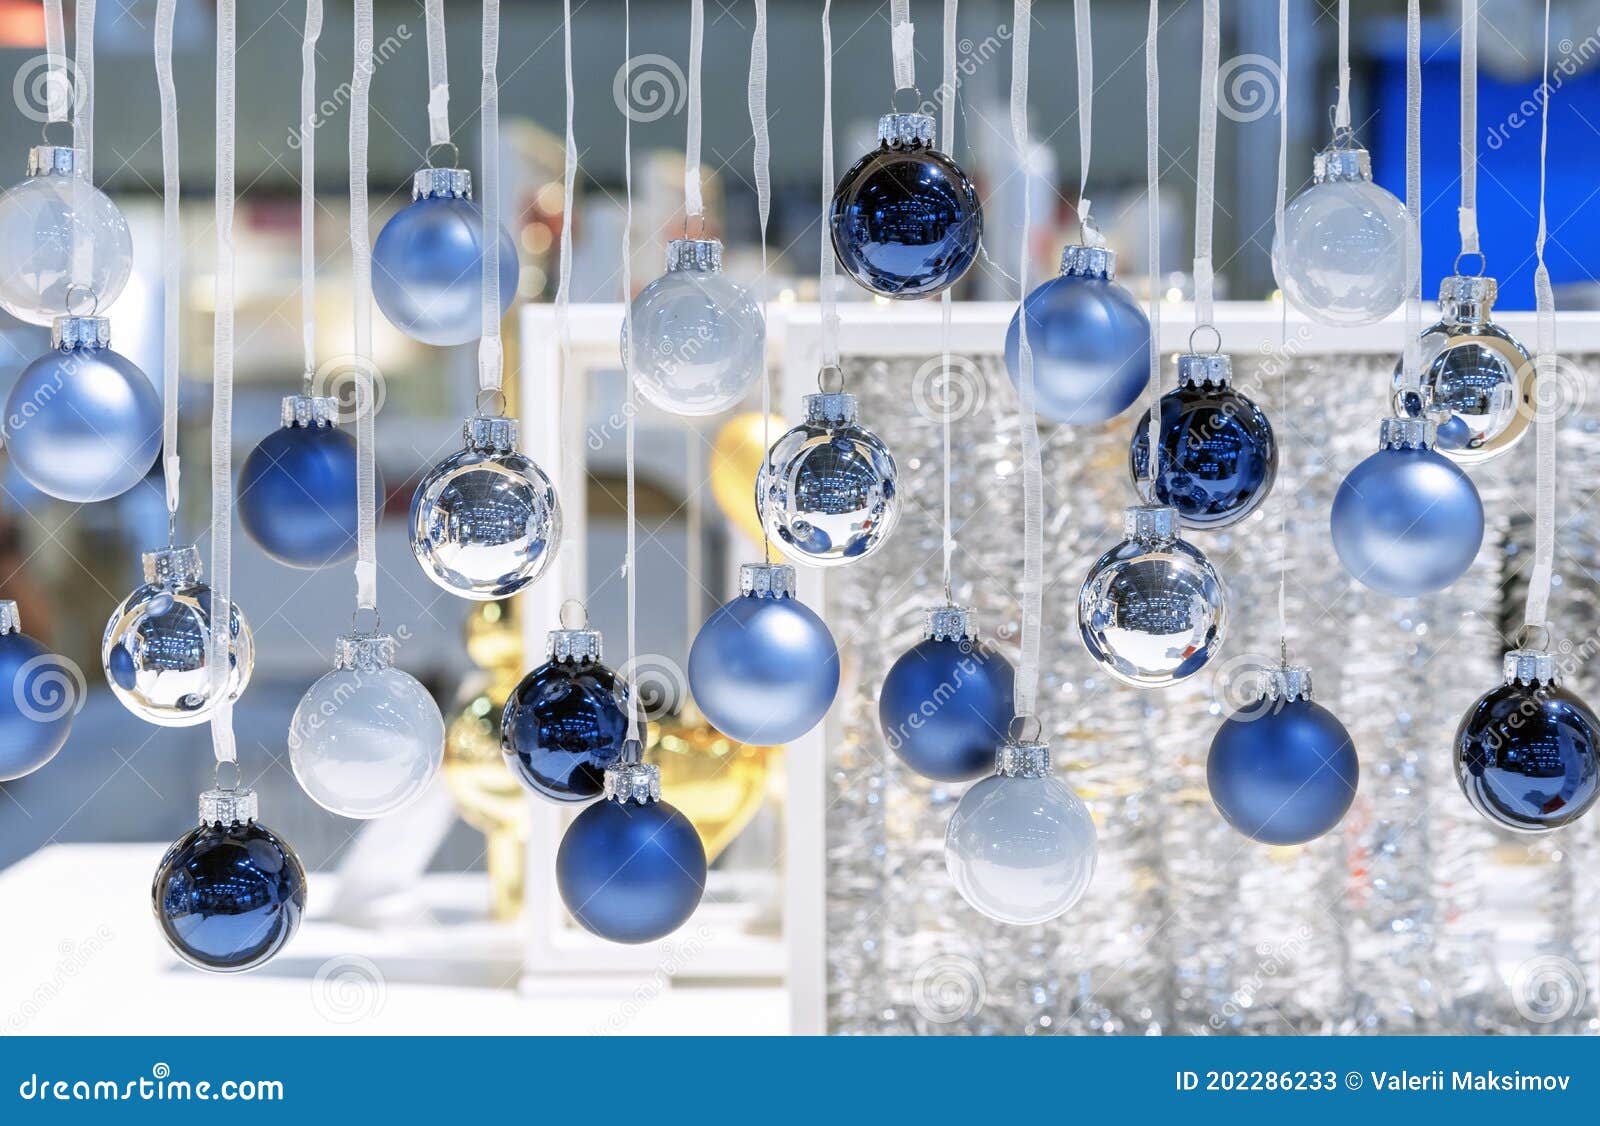 caloría Sillón ajuste Navidad Azul Oscuro Azul Claro Azul Y Blanca Pequeñas Bolas Cuelgan De  Cintas Blancas. Decoración Navideña Imagen de archivo - Imagen de navidad,  hilos: 202286233